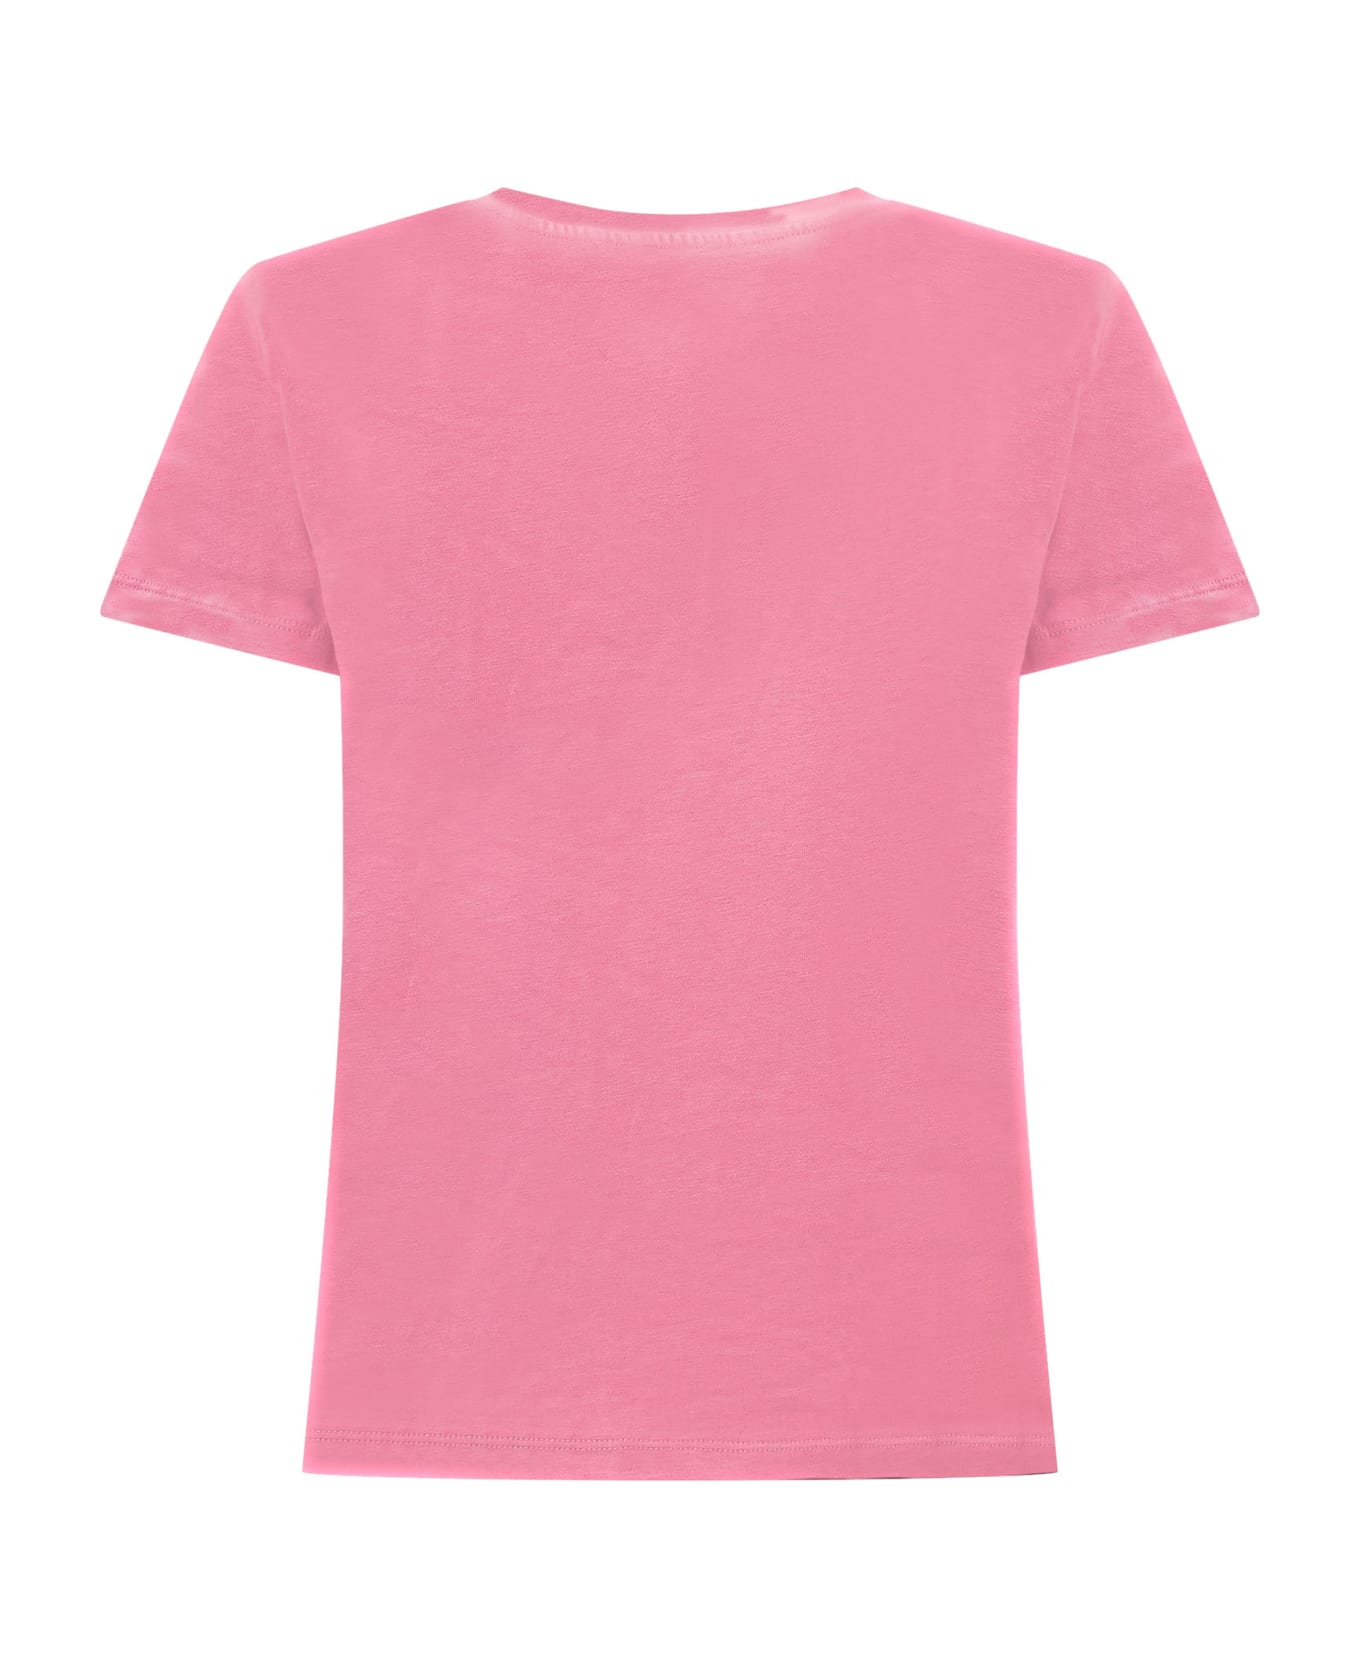 Young Versace T-shirt With Logo - TUTU PINK-ROSA